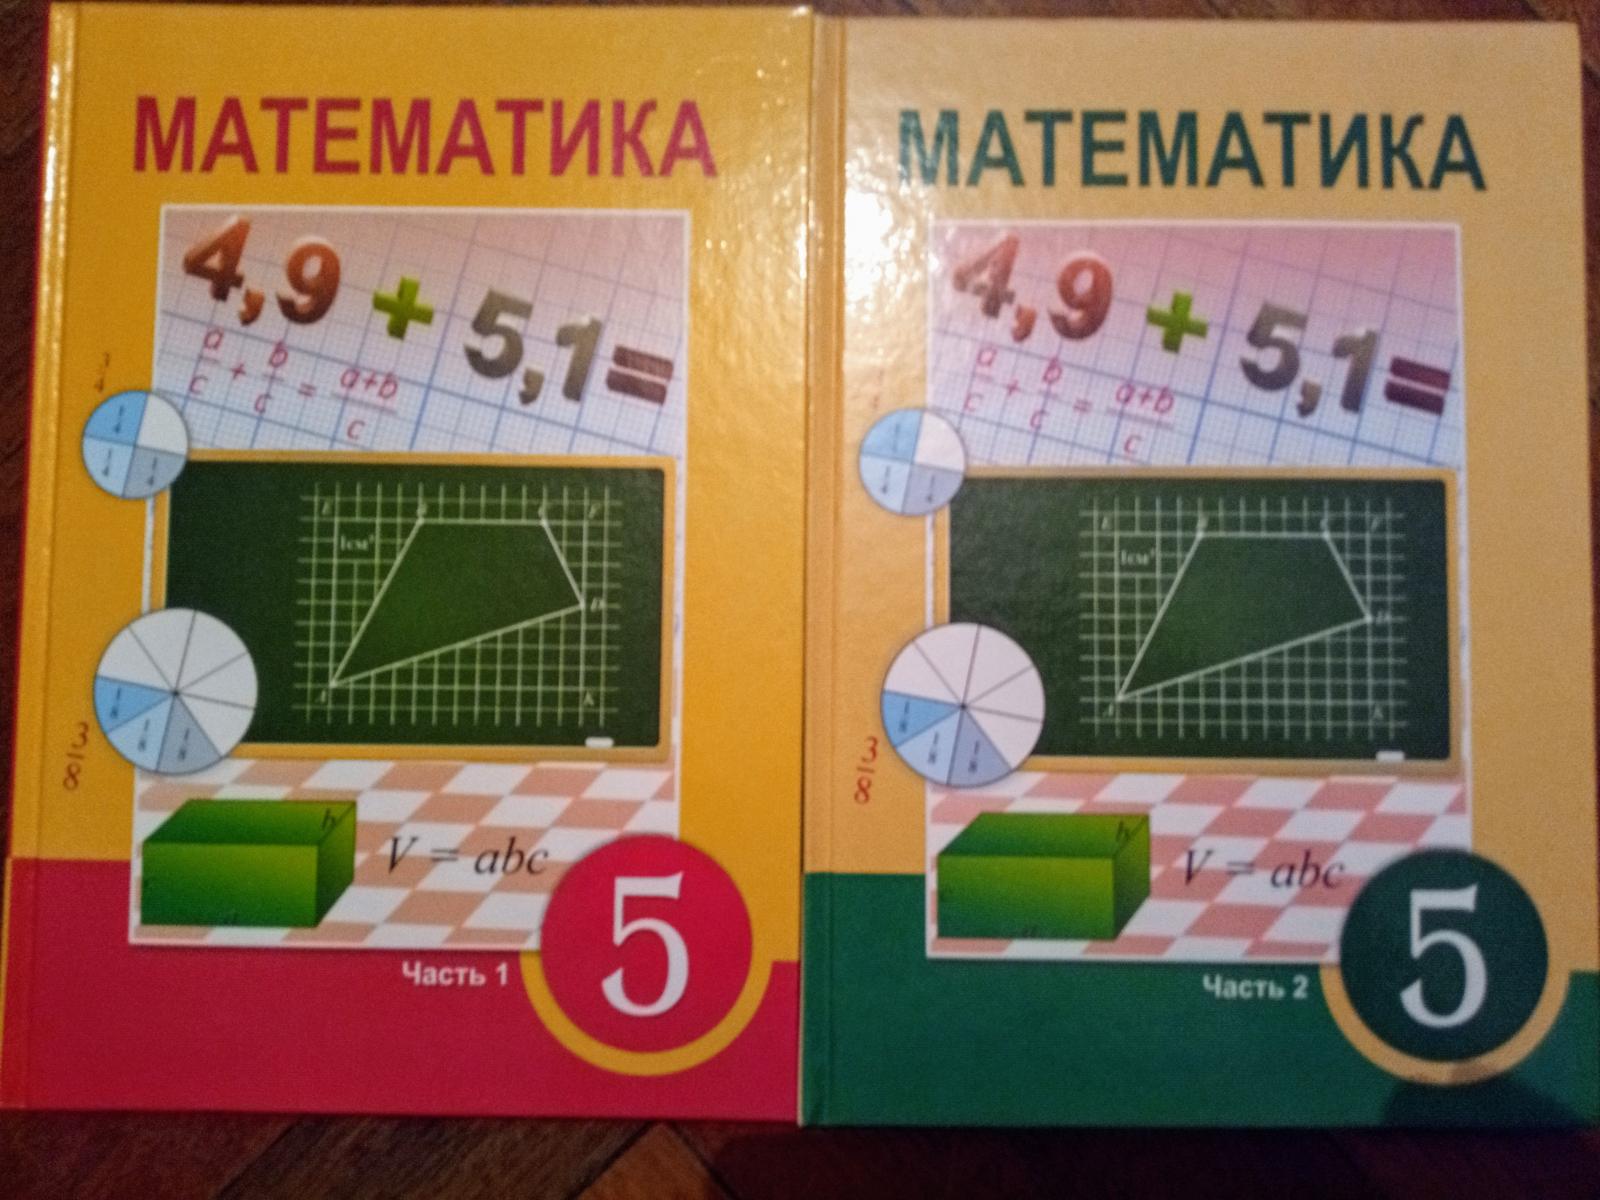 Матем 5 класс 6.120. 2+Учебники+атамура. Математика 6 класс атамура 2006 год. Матем 5.510. Матем 5 рис. 5.39.